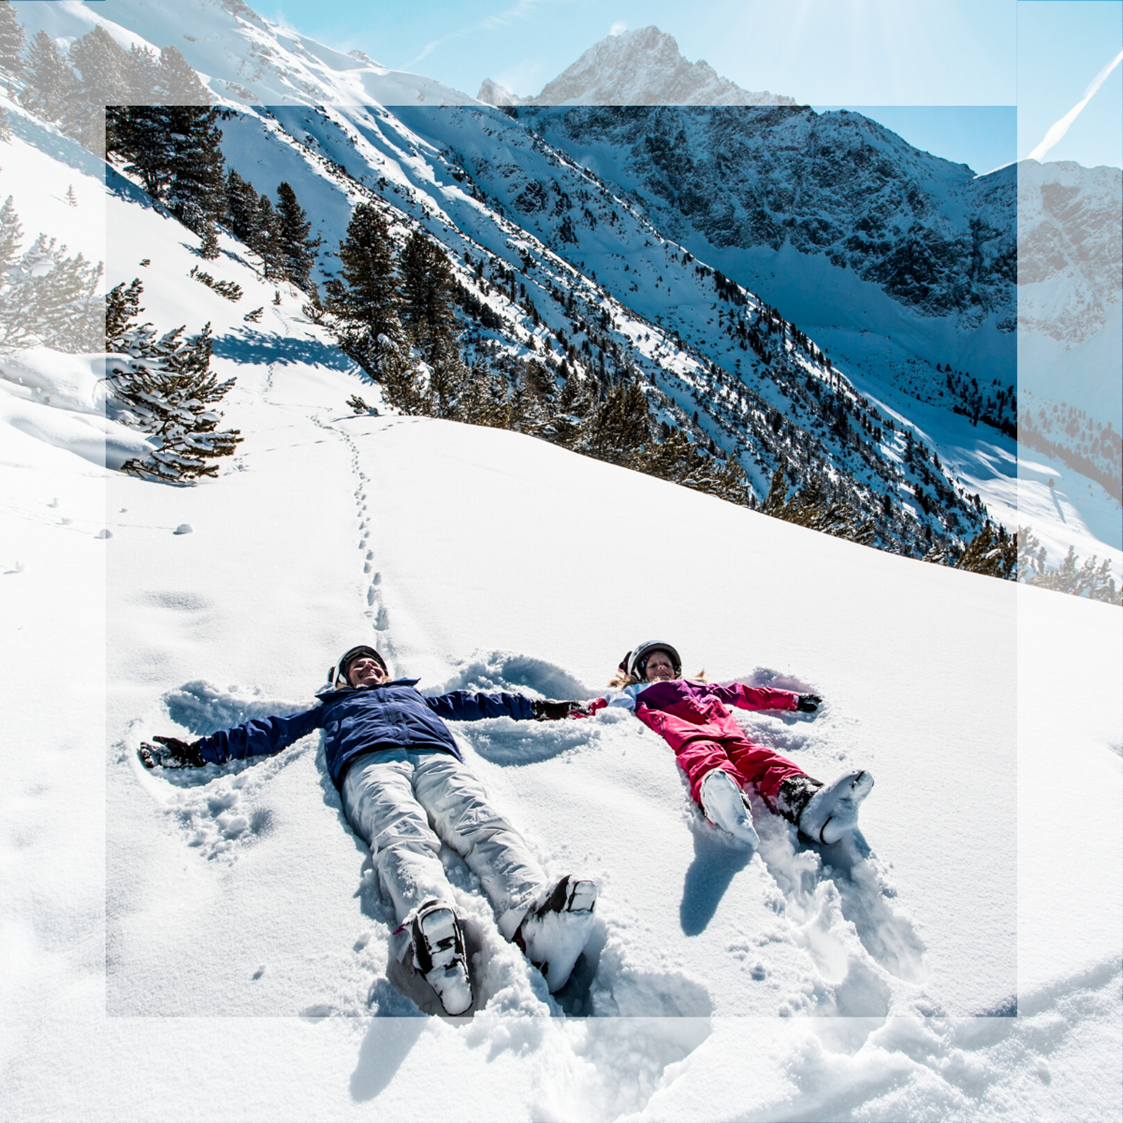 Skigebiet: Skiurlaub für die ganze Familie.
Kinderaugen leuchten und Elternherzen schlagen höher im Skigebiet Obergurgl-Hochgurgl im Tiroler Ötztal: Das Skigebiet ist mit 25 Liftanlagen und 112 Pistenkilometern der perfekte Abenteuerspielplatz für die ganze Familie. Auf kleine Skifahrer und Anfänger warten einfache Abfahrten, erfahrene Skifahrer dürfen auf steilen Hängen ihre Schwünge ziehen.

Das Skigebiet Obergurgl-Hochgurgl ist eines der beliebtesten Skigebiete in Tirol und den Alpen. Sowohl das Skigebiet als auch die beiden Bergdörfer Obergurgl und Hochgurgl sind sehr übersichtlich - hier geht niemand verloren. Wer das Skifahren erlernen möchte, wird in regionalen Skischulen bestens betreut. Obergurgl-Hochgurgl am hinteren Ende des Ötztals ist die perfekte Destination für Ihren Familienurlaub in den Bergen. - Skigebiet Gurgl